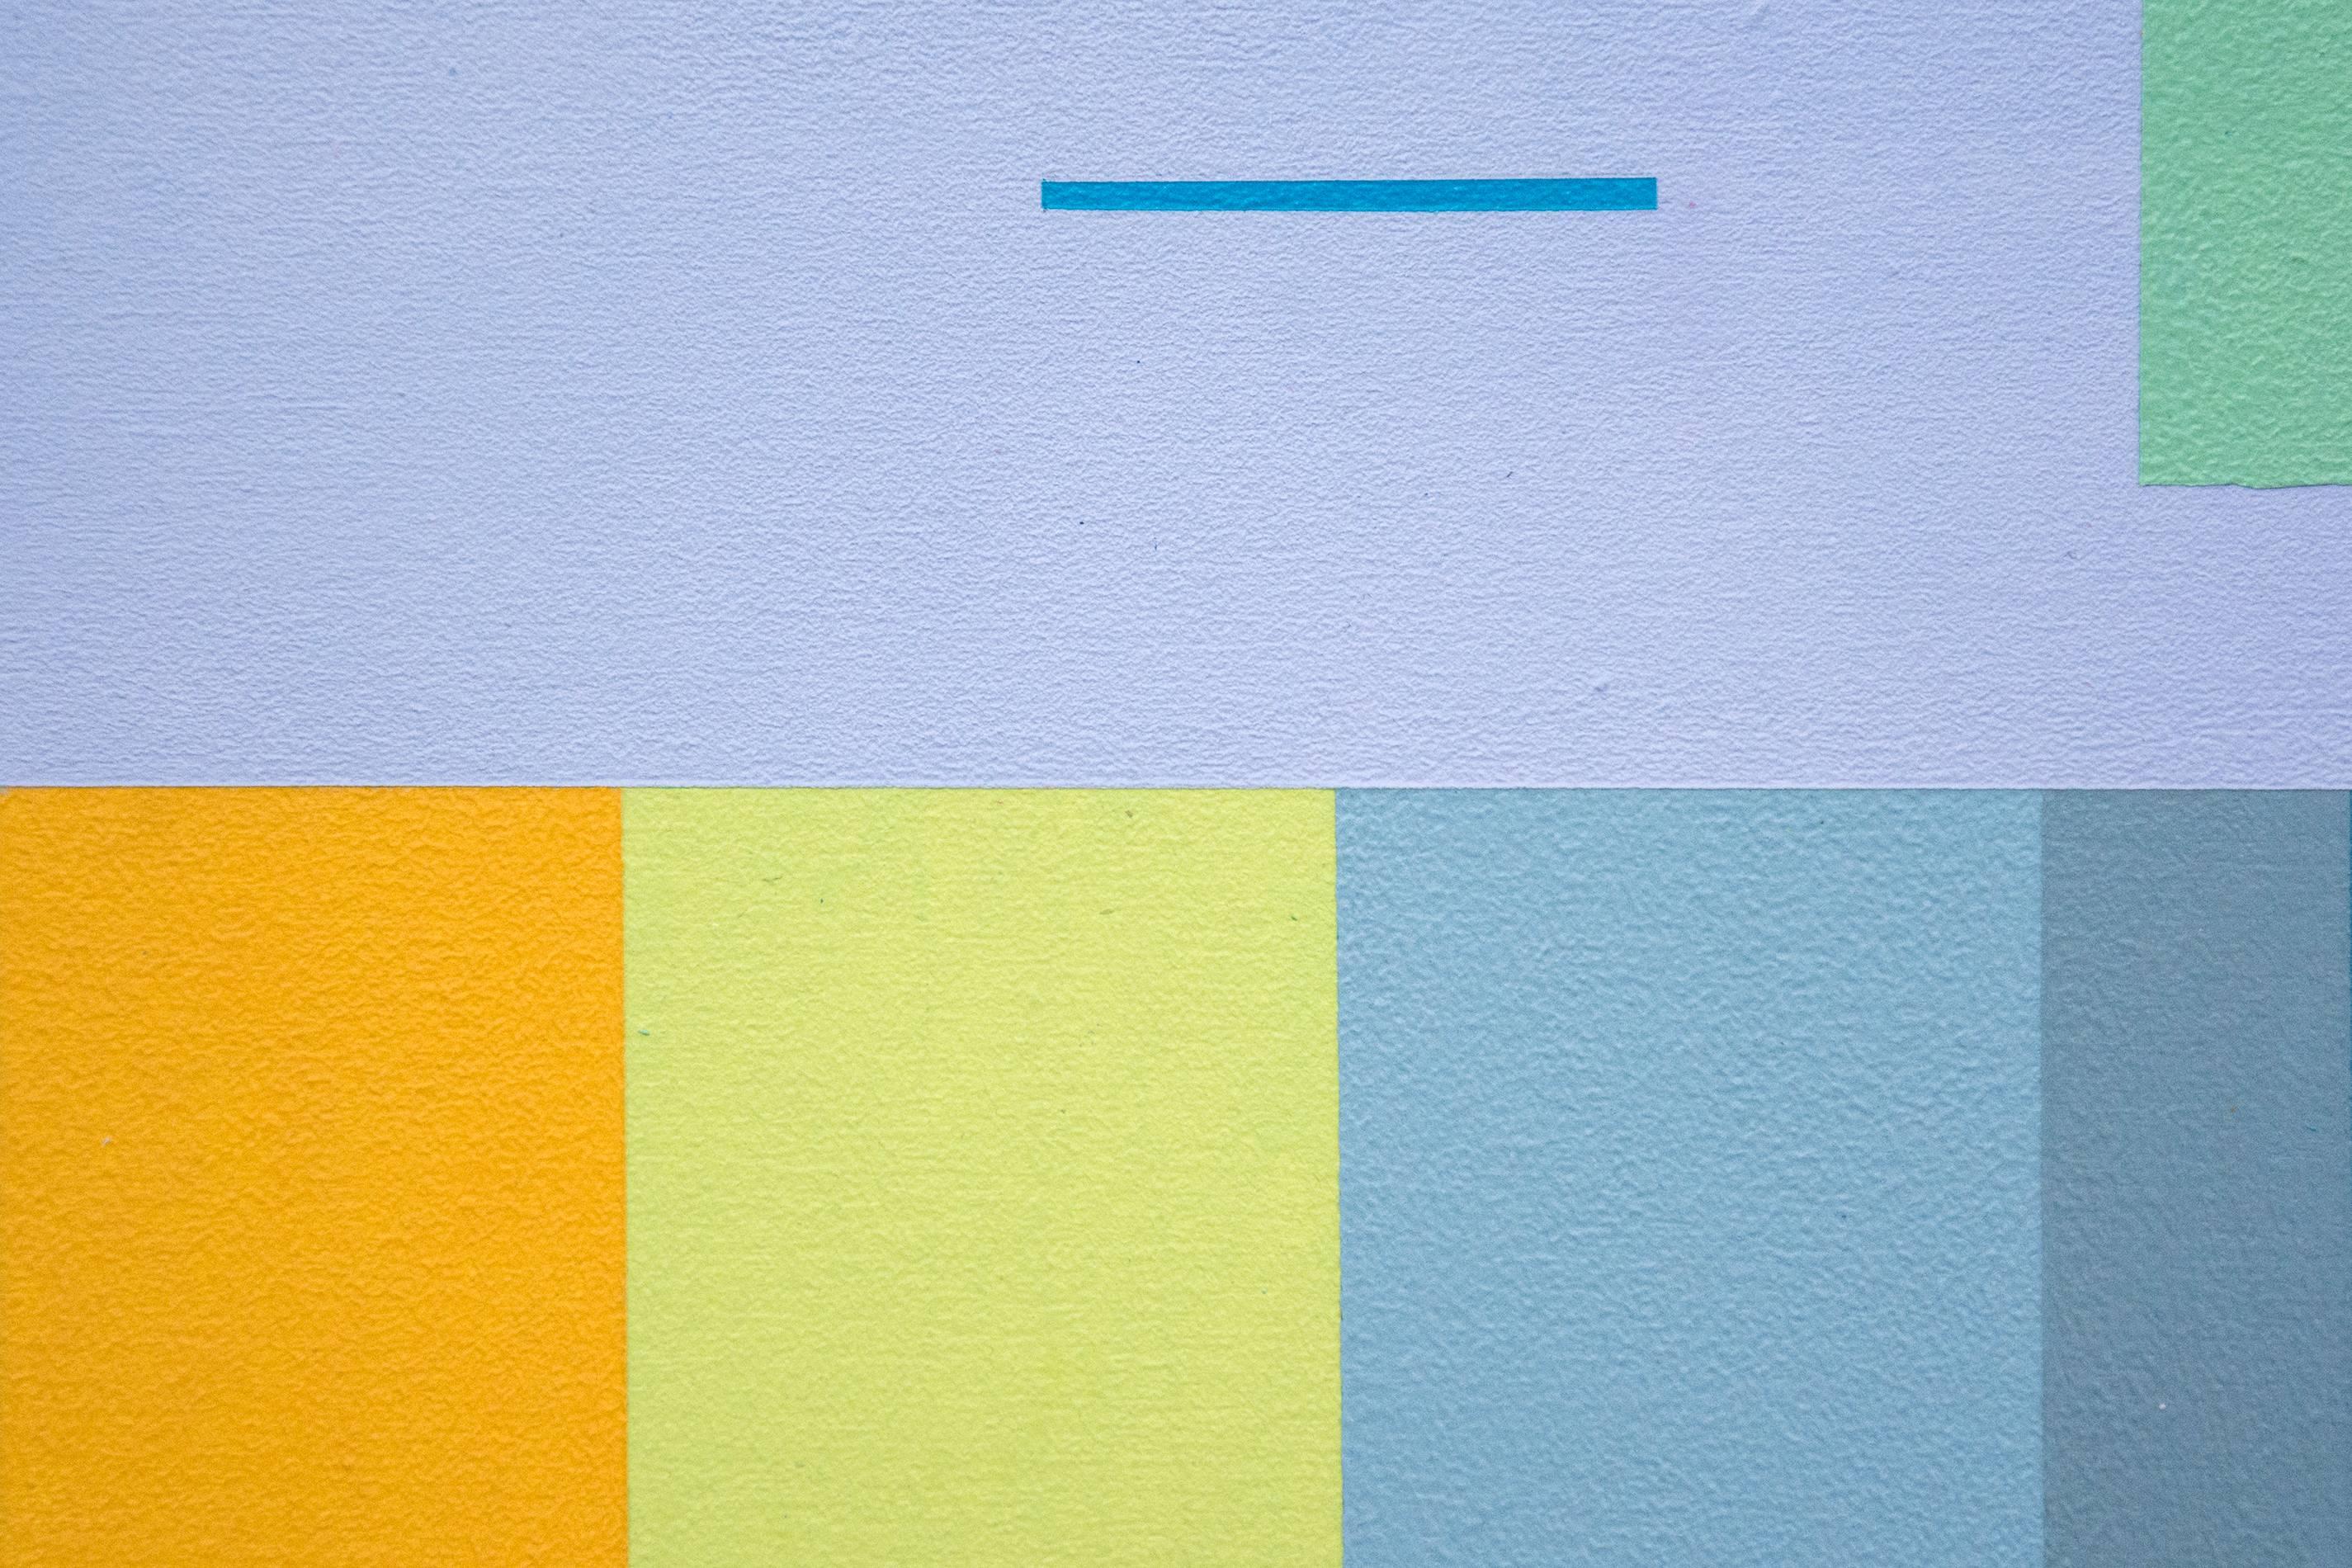 Un staccato de fins traits horizontaux et verticaux en cramoisi, blanc et turquoise illumine une composition horizontale de bleu, rose, jaune et vert pastel sur un fond d'ardoise bleue dans cette acrylique sur panneau. Cette composition précise,